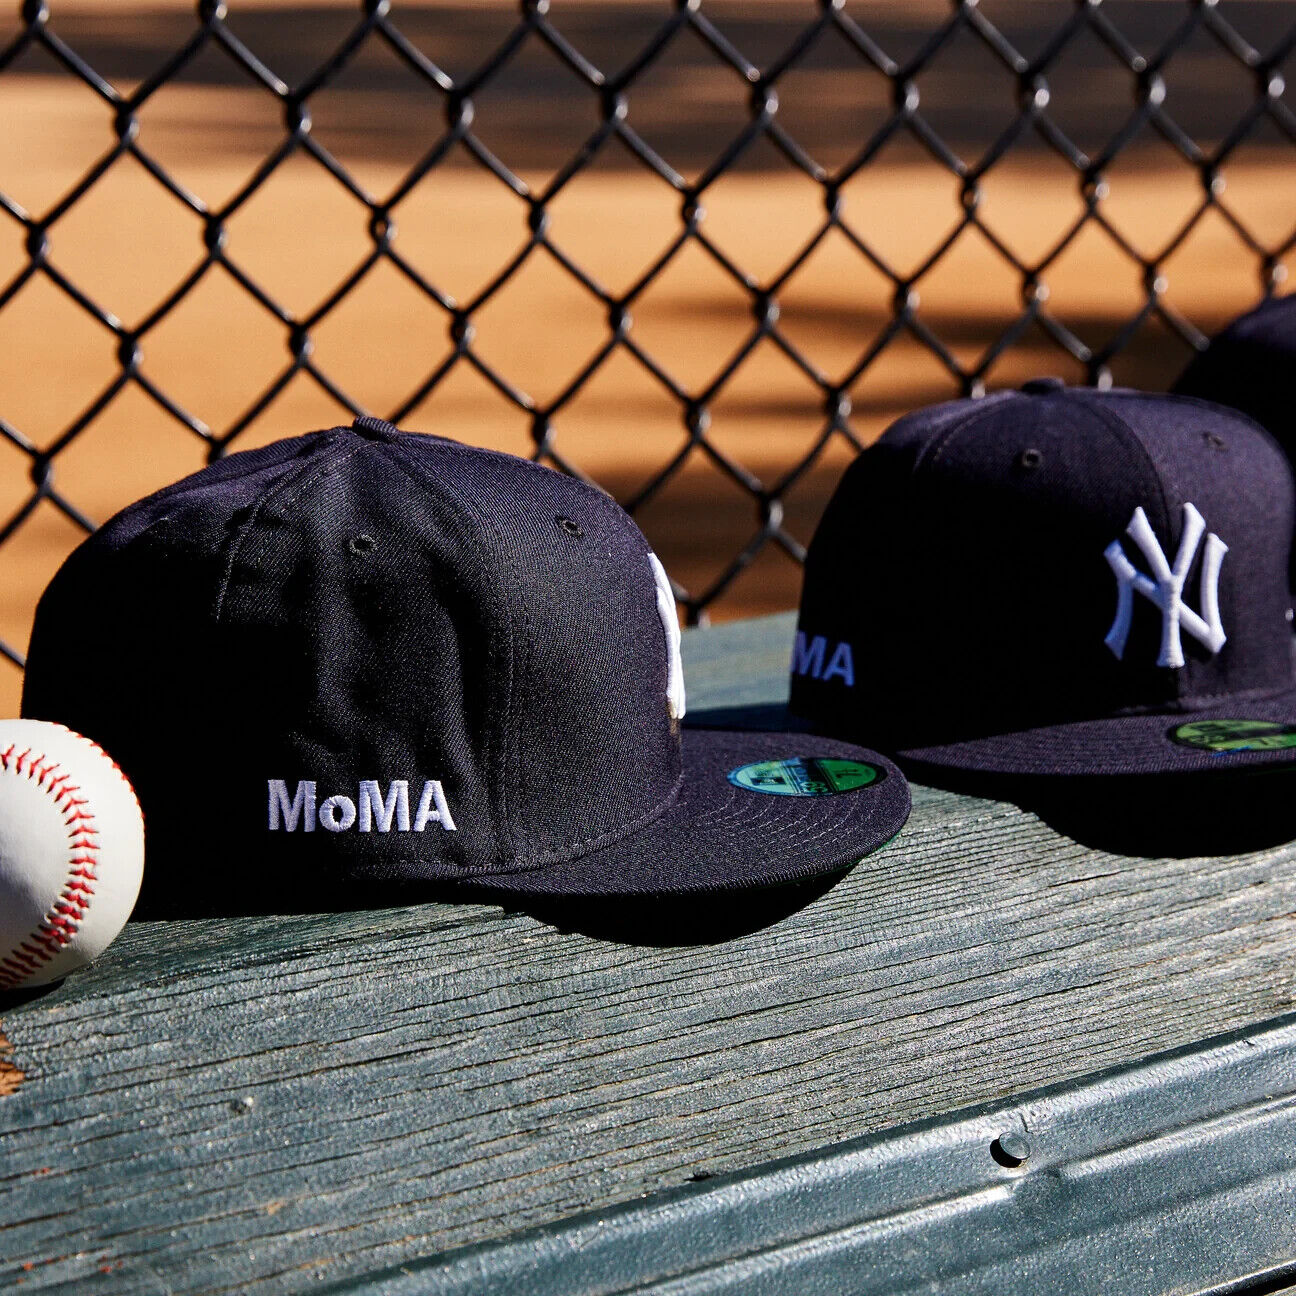 MoMA NY Yankees New Era Baseball Cap Fitted 7 3/8 | eBay